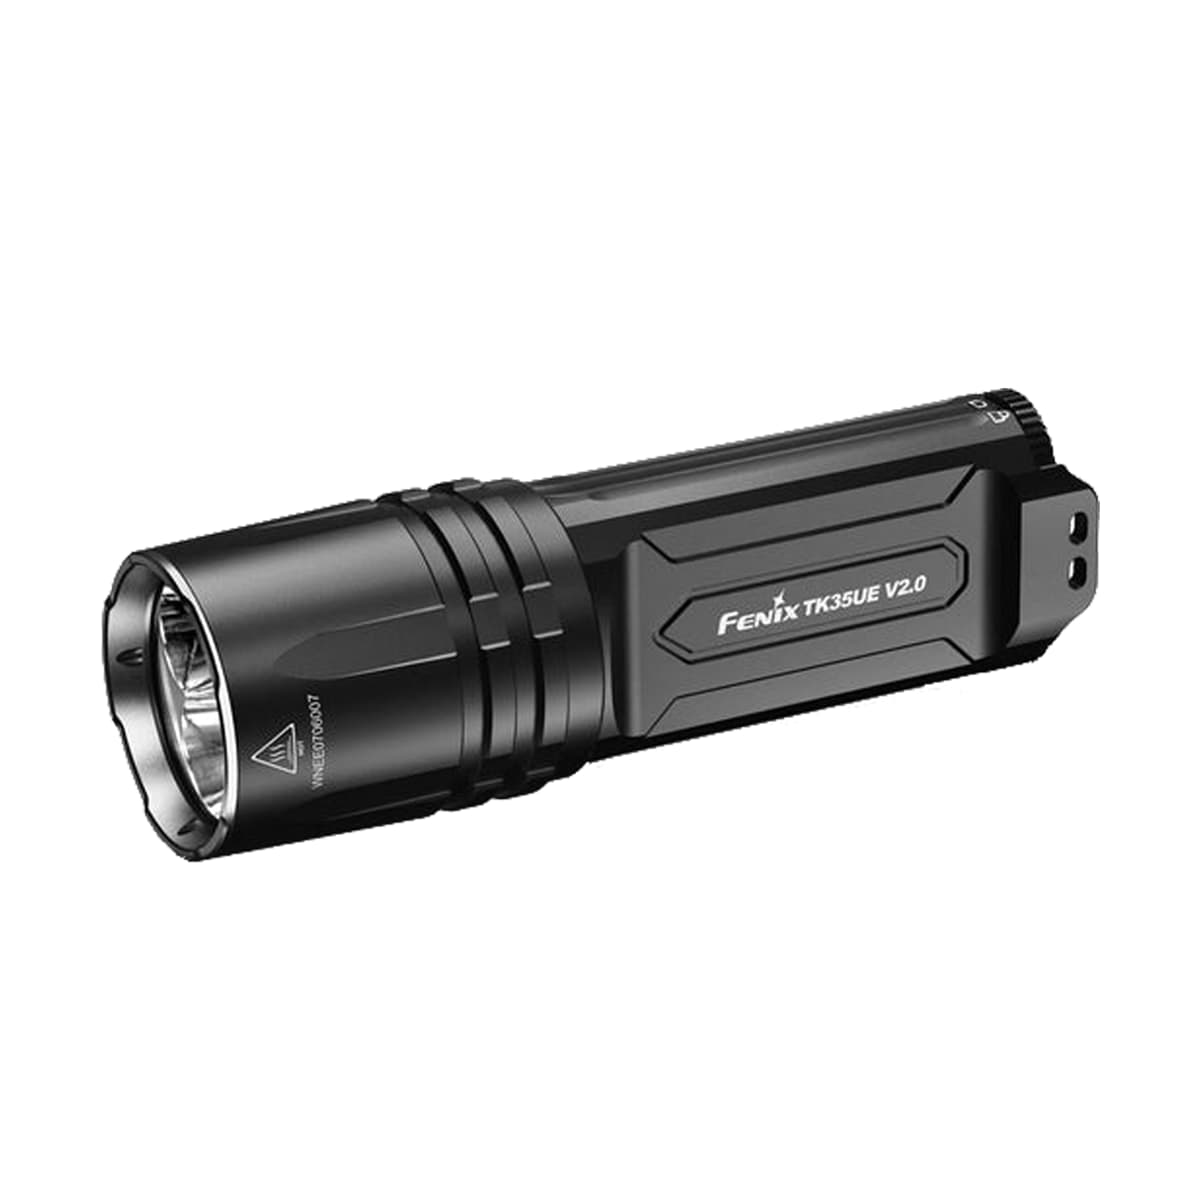 Fenix TK35 UE V2.0 Flashlight